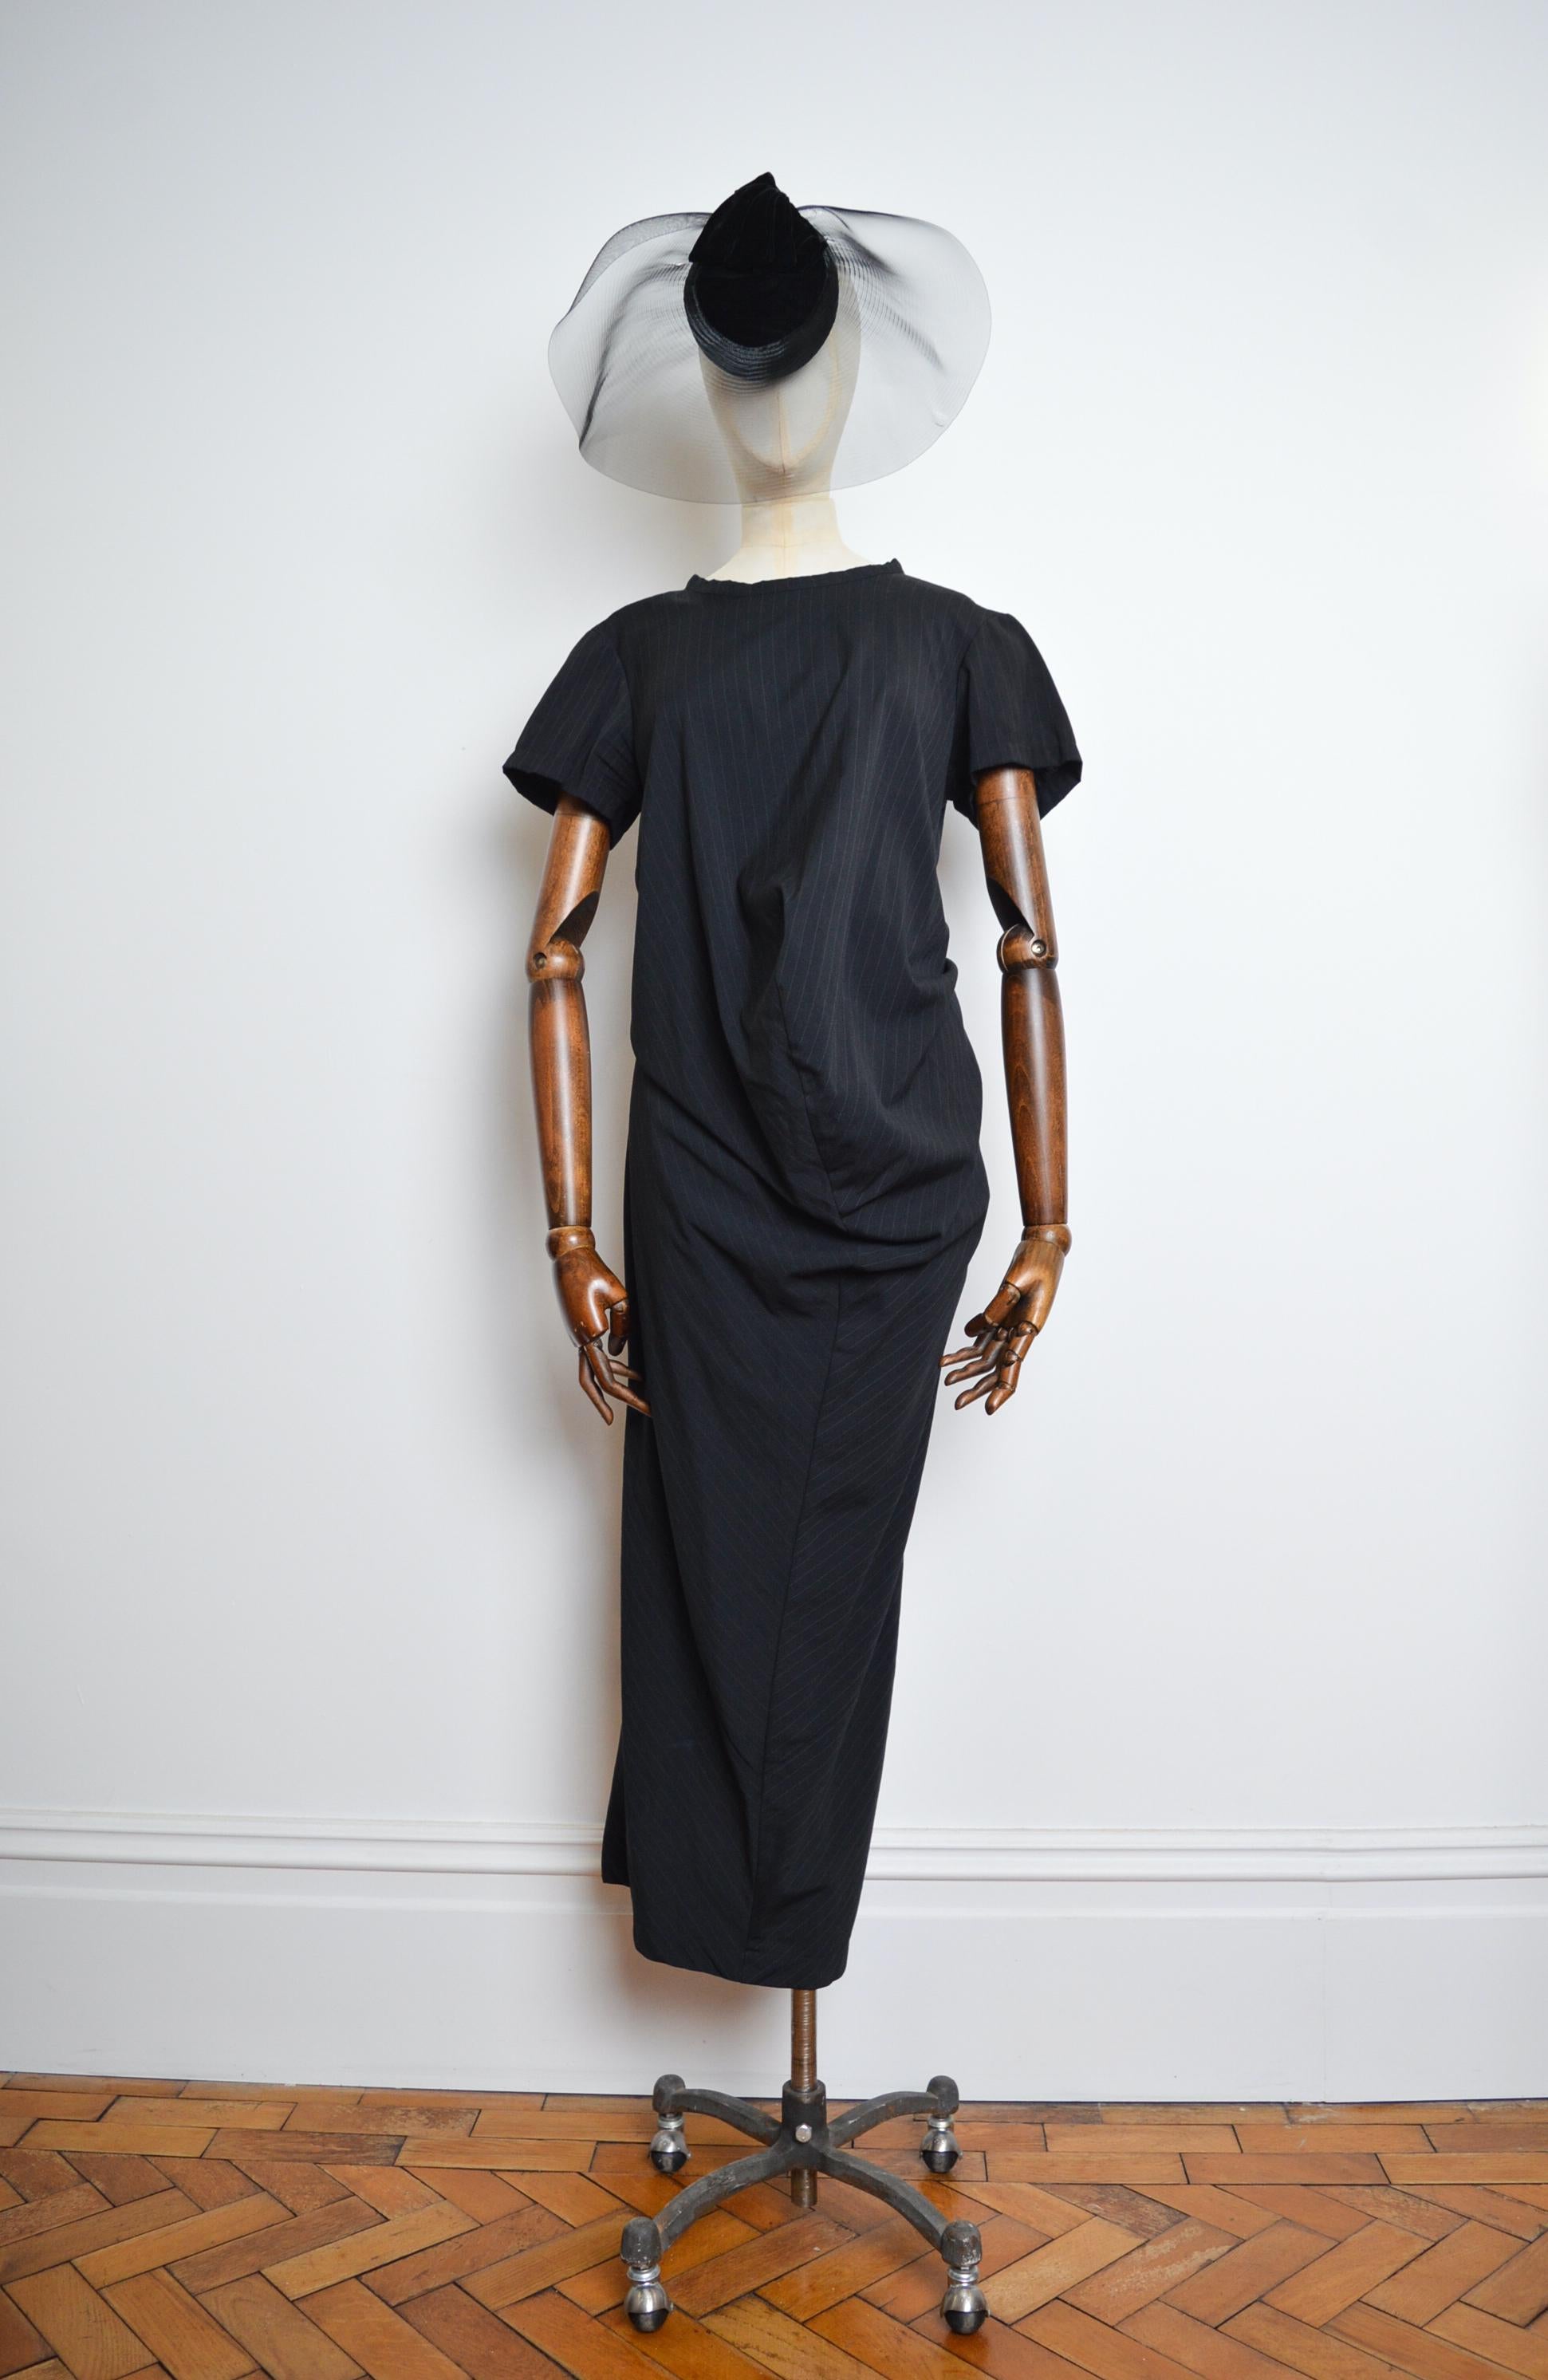 Wunderschönes ORIGINAL 1999, Avant Guard Nadelstreifen-Kleid von COMME DES GARÇONS, elegant gefertigt aus einem anthrazitfarbenen Wollstoff.   

GEFERTIGT IN JAPAN.   

Das Kleidungsstück kann bewegt und verformt werden, um verschiedene Formen und